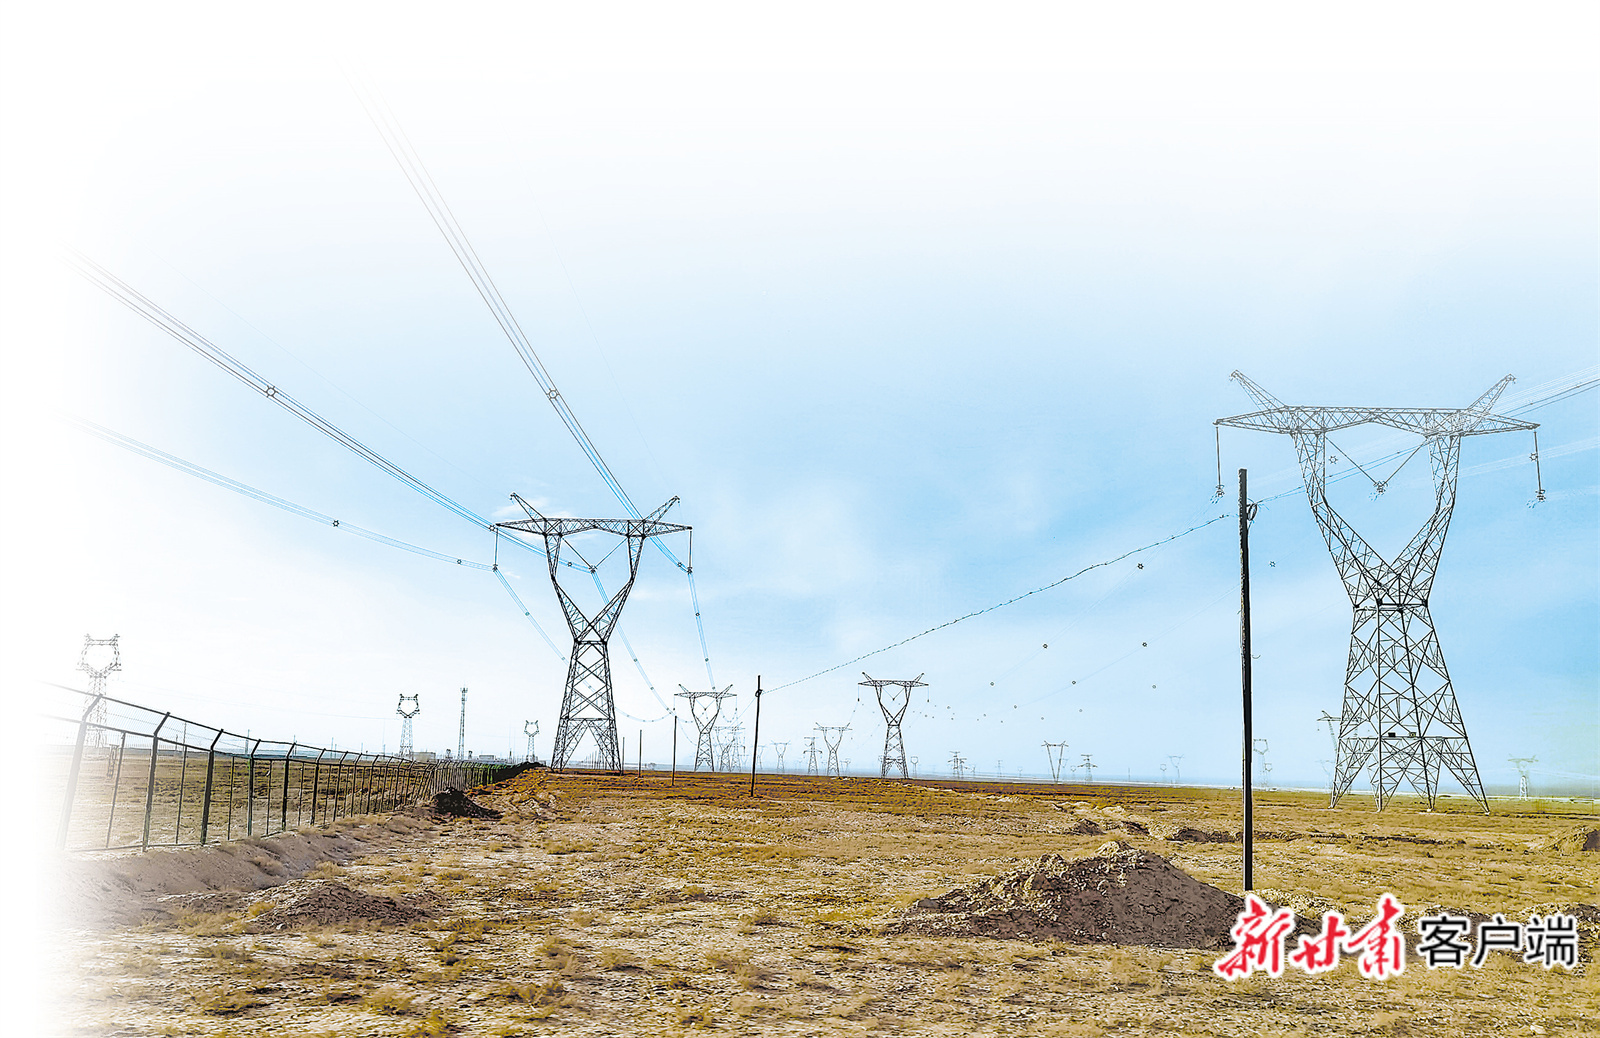 高台县高崖子滩上蔚为壮观的高压输电线路 新甘肃·甘肃日报记者 范海瑞